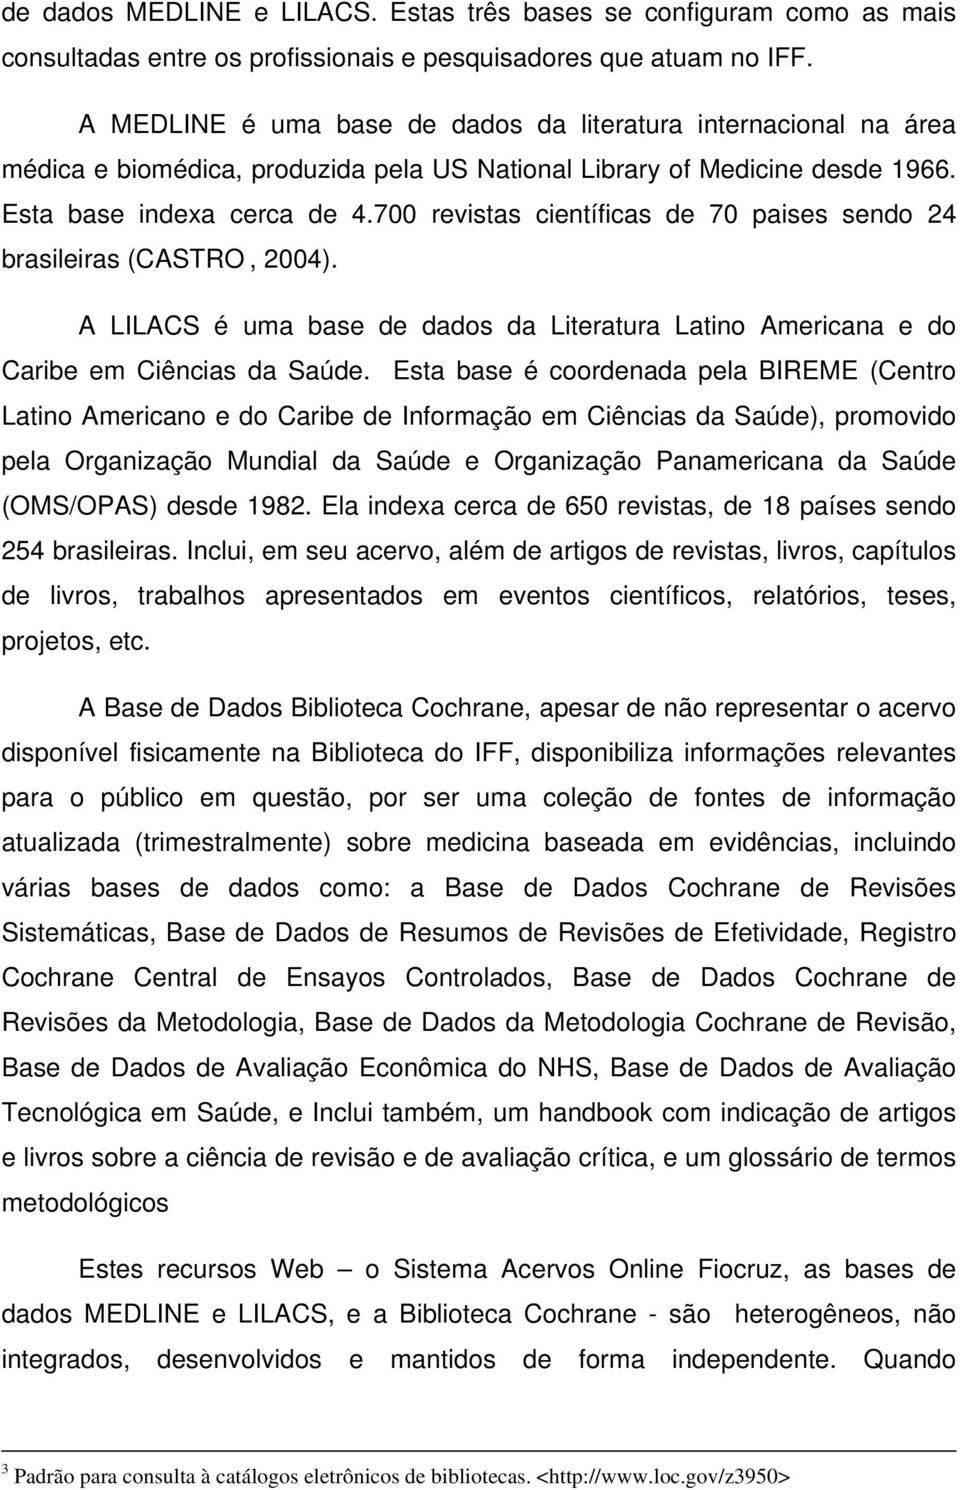 700 revistas científicas de 70 paises sendo 24 brasileiras (CASTRO, 2004). A LILACS é uma base de dados da Literatura Latino Americana e do Caribe em Ciências da Saúde.